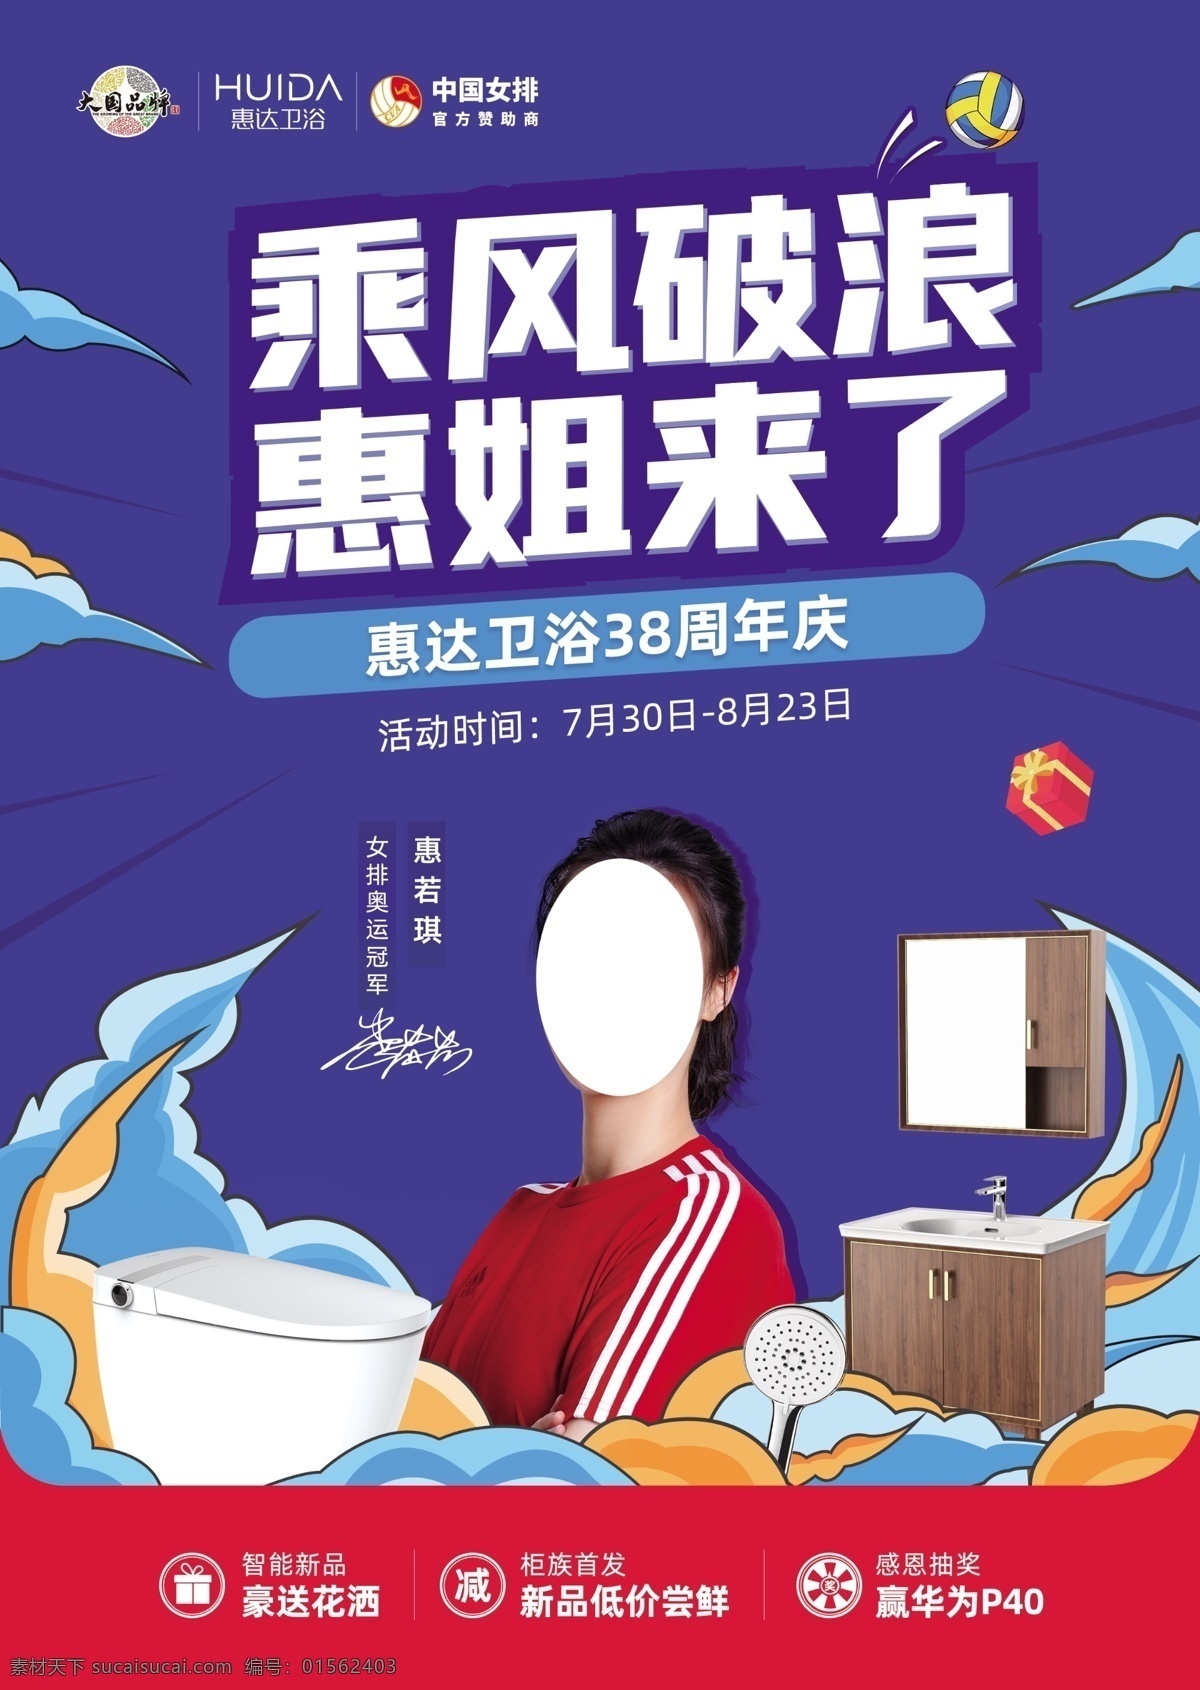 乘风破浪 惠姐来了 惠达卫浴 周年庆 中国女排 宣传单 分层